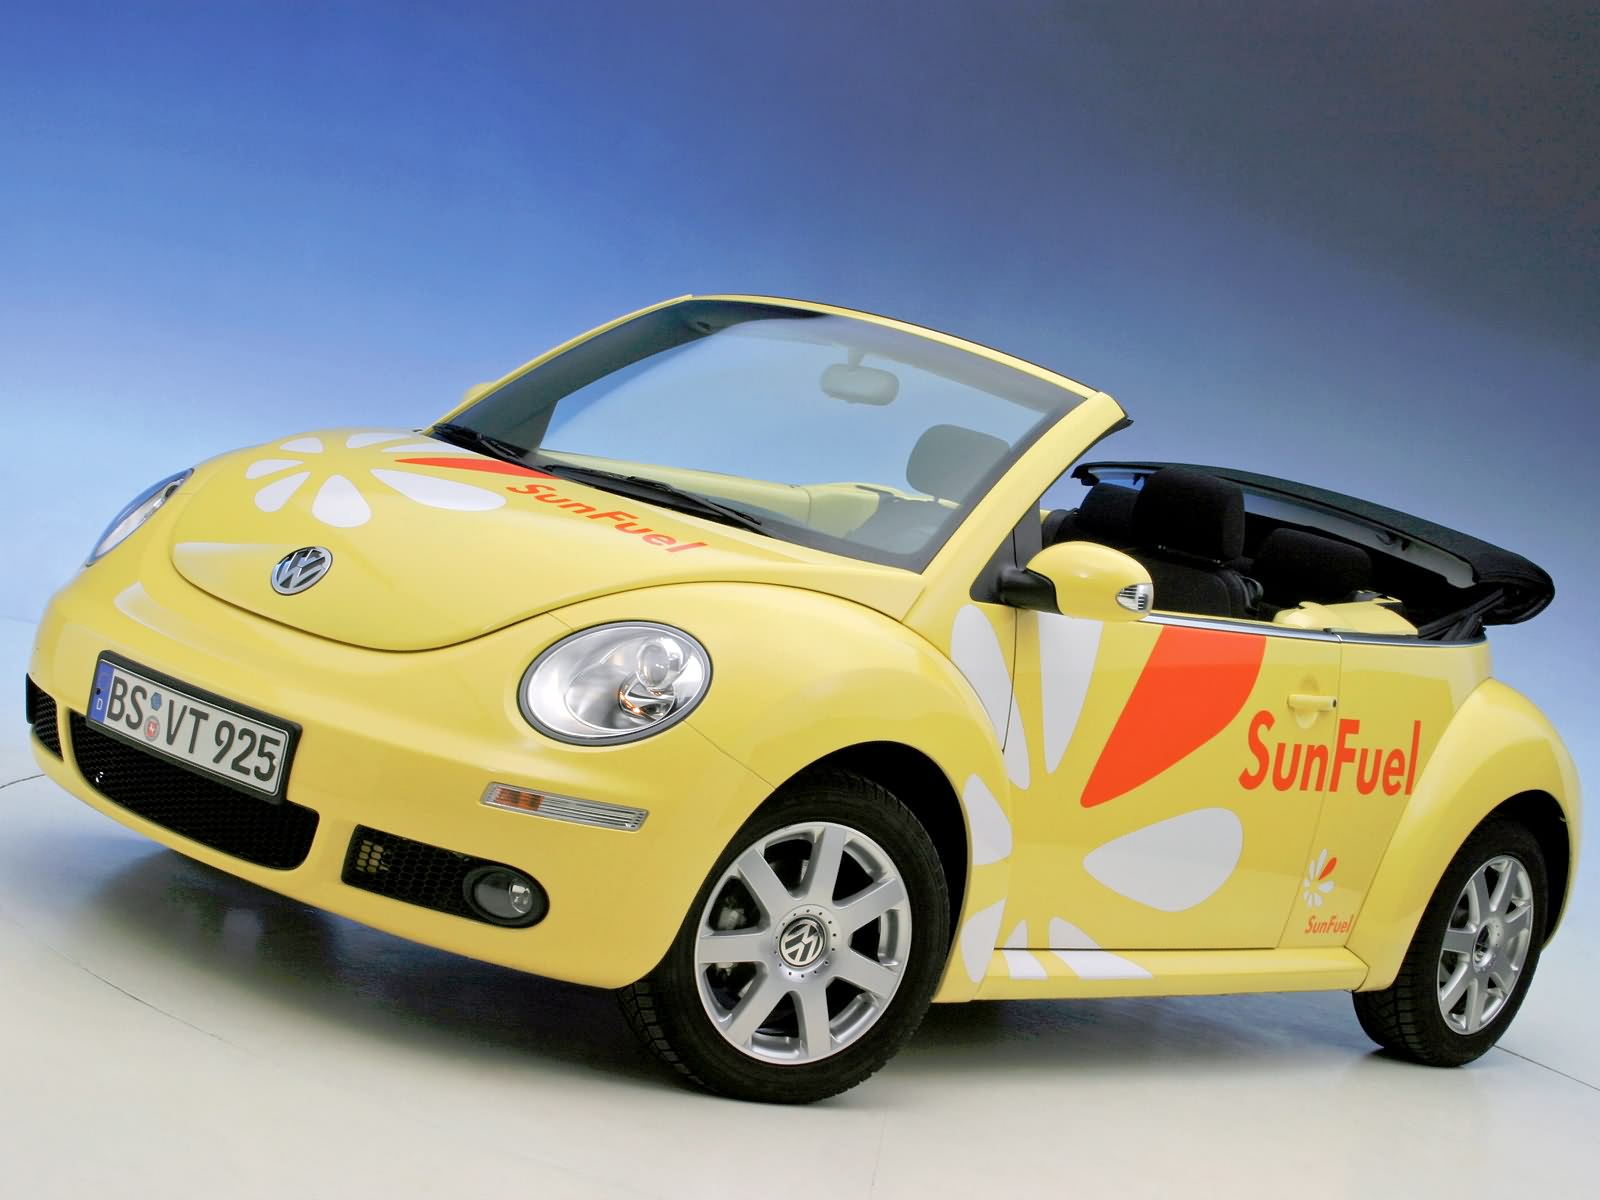 2006 Volkswagen New Beetle Cabriolet Sunfuel concept